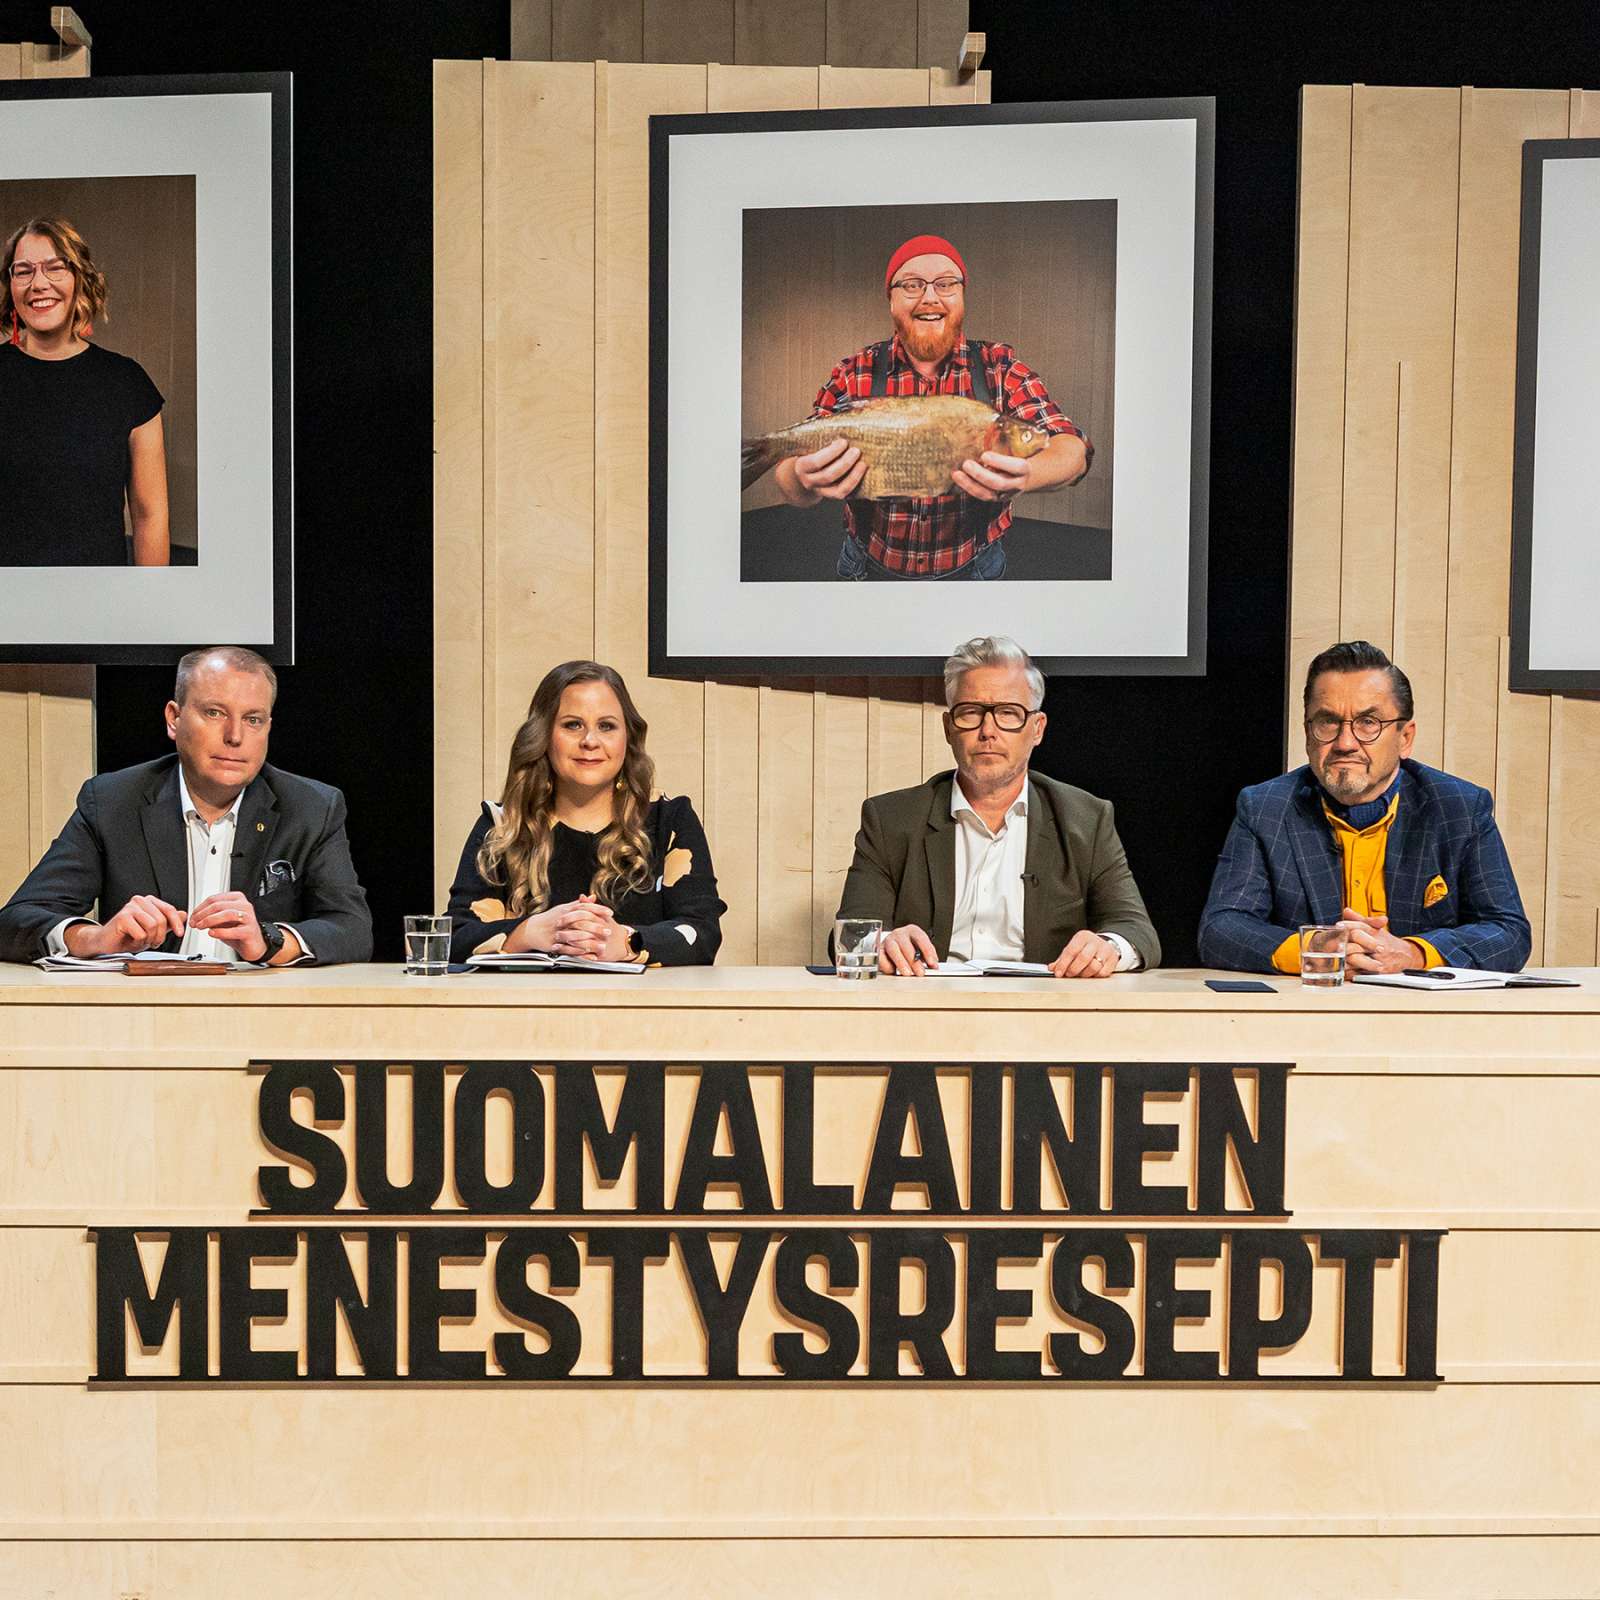 Tuomariston jäsenet Sampo Päällysaho, Suvi Luoma, Jyrki Sukula ja Jukka Kurttila valitsevat Suomalainen Menestysresepti -sarjan finaalissa voittajan.